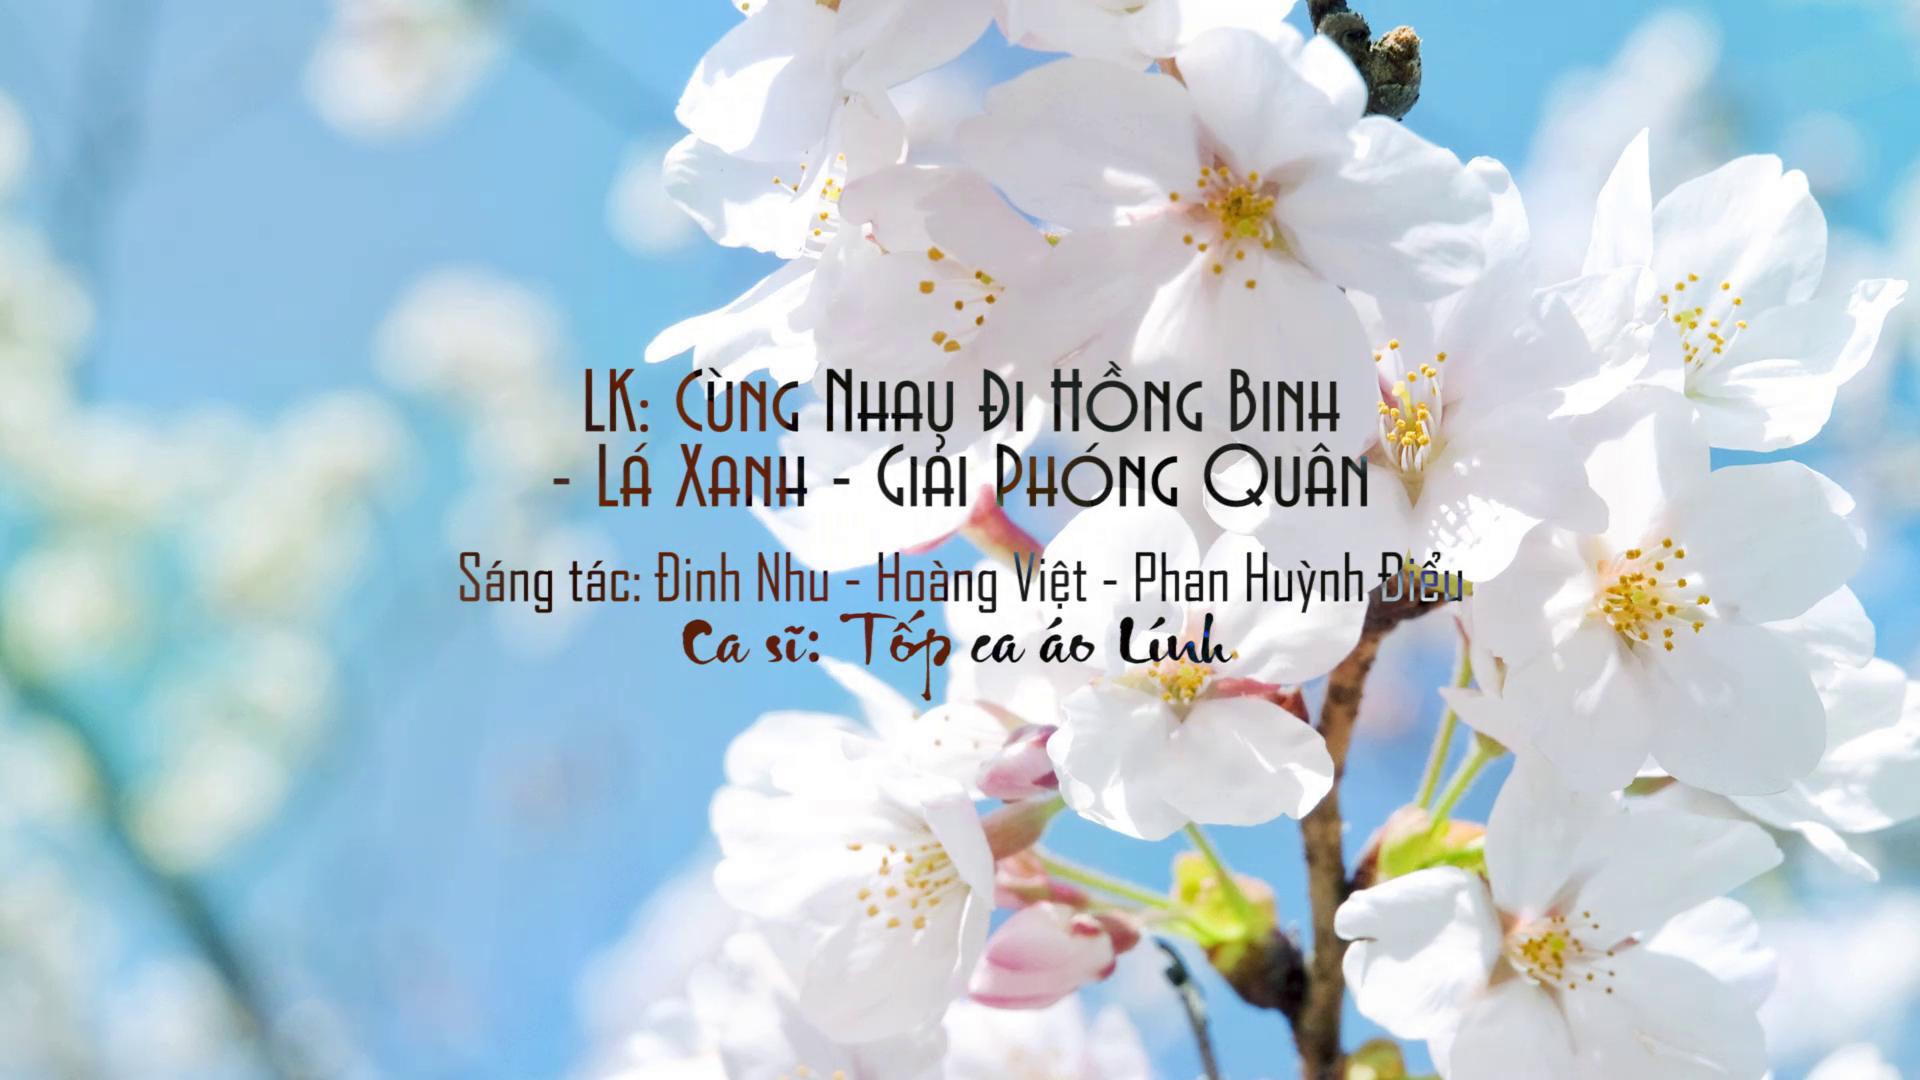 Lien Khuc_ Cung Nhau Di Hong Binh_ La Xanh_ Giai Phong Quan - Top Ca Ao Linh.jpeg